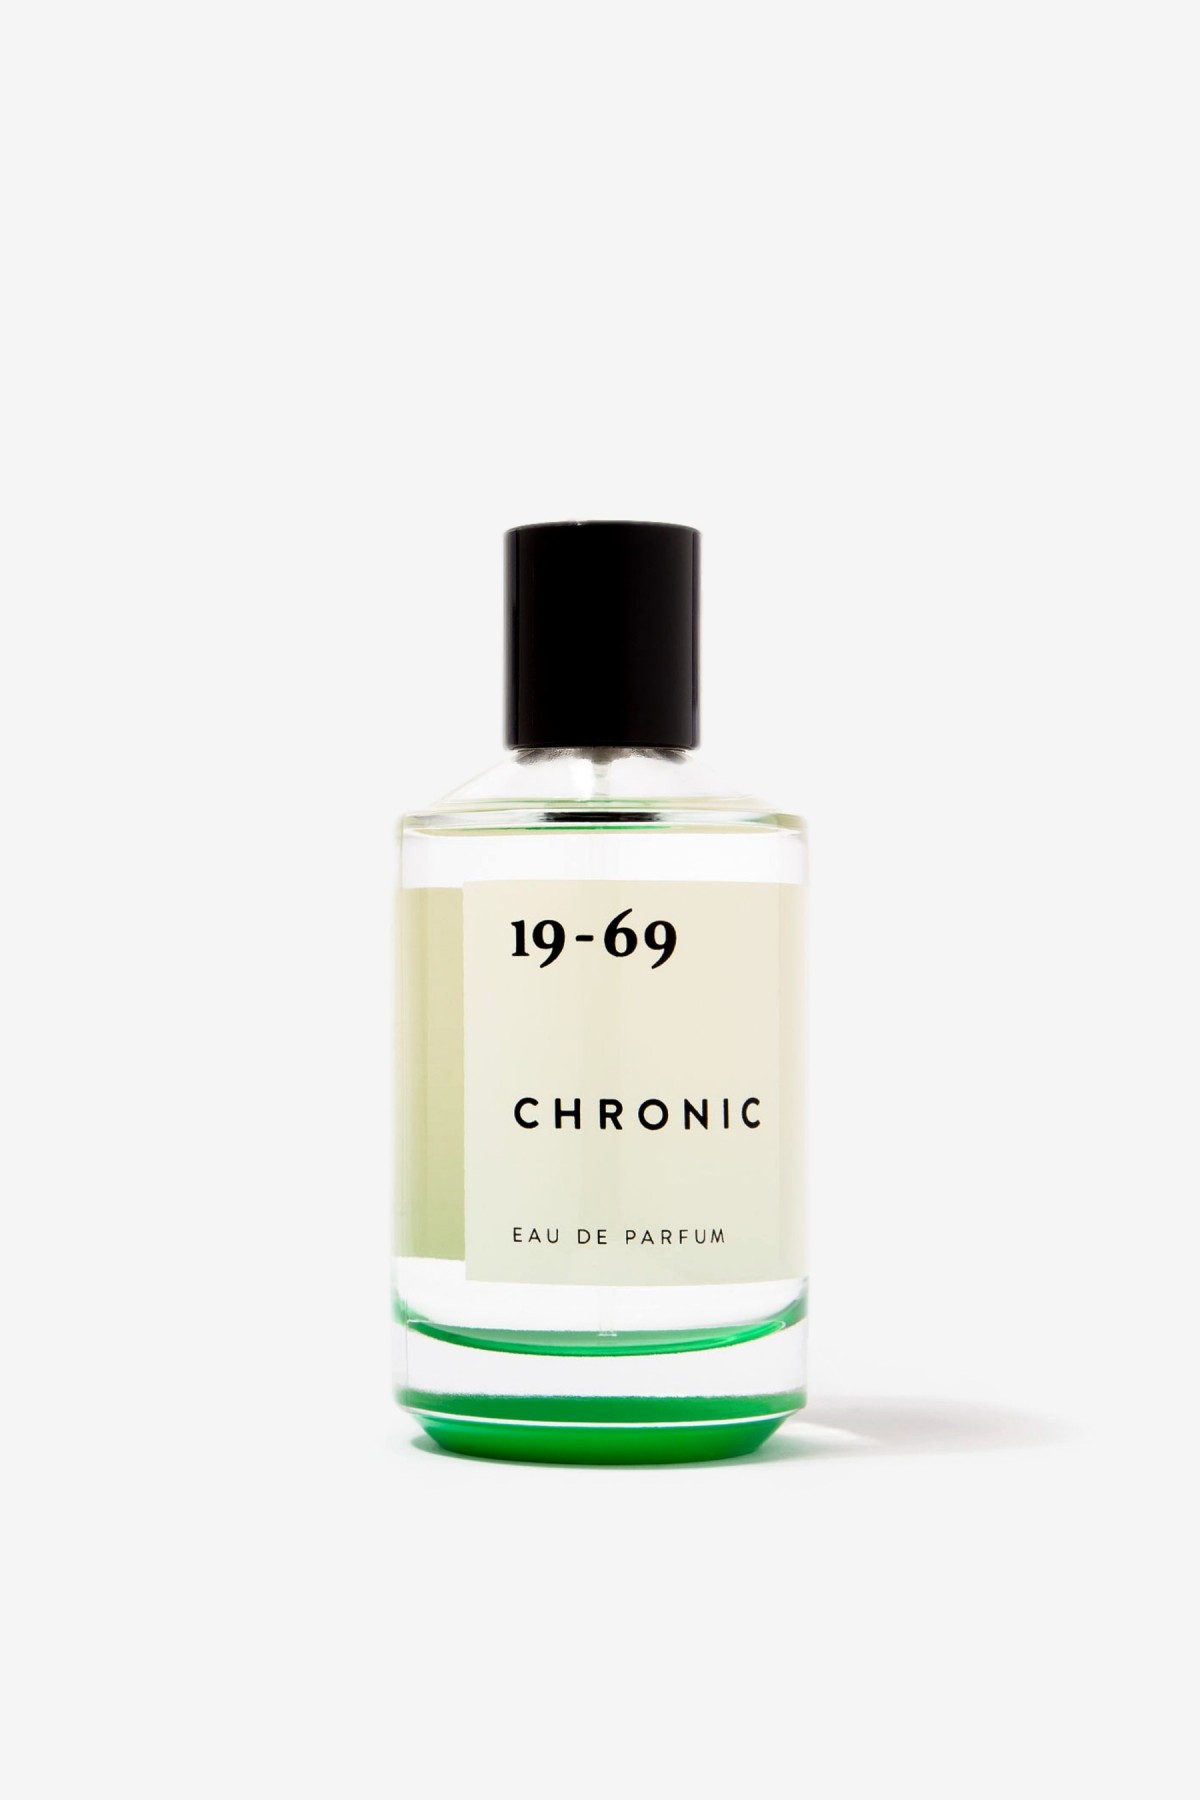 19-69 Chronic Eau de Parfum in 50ml